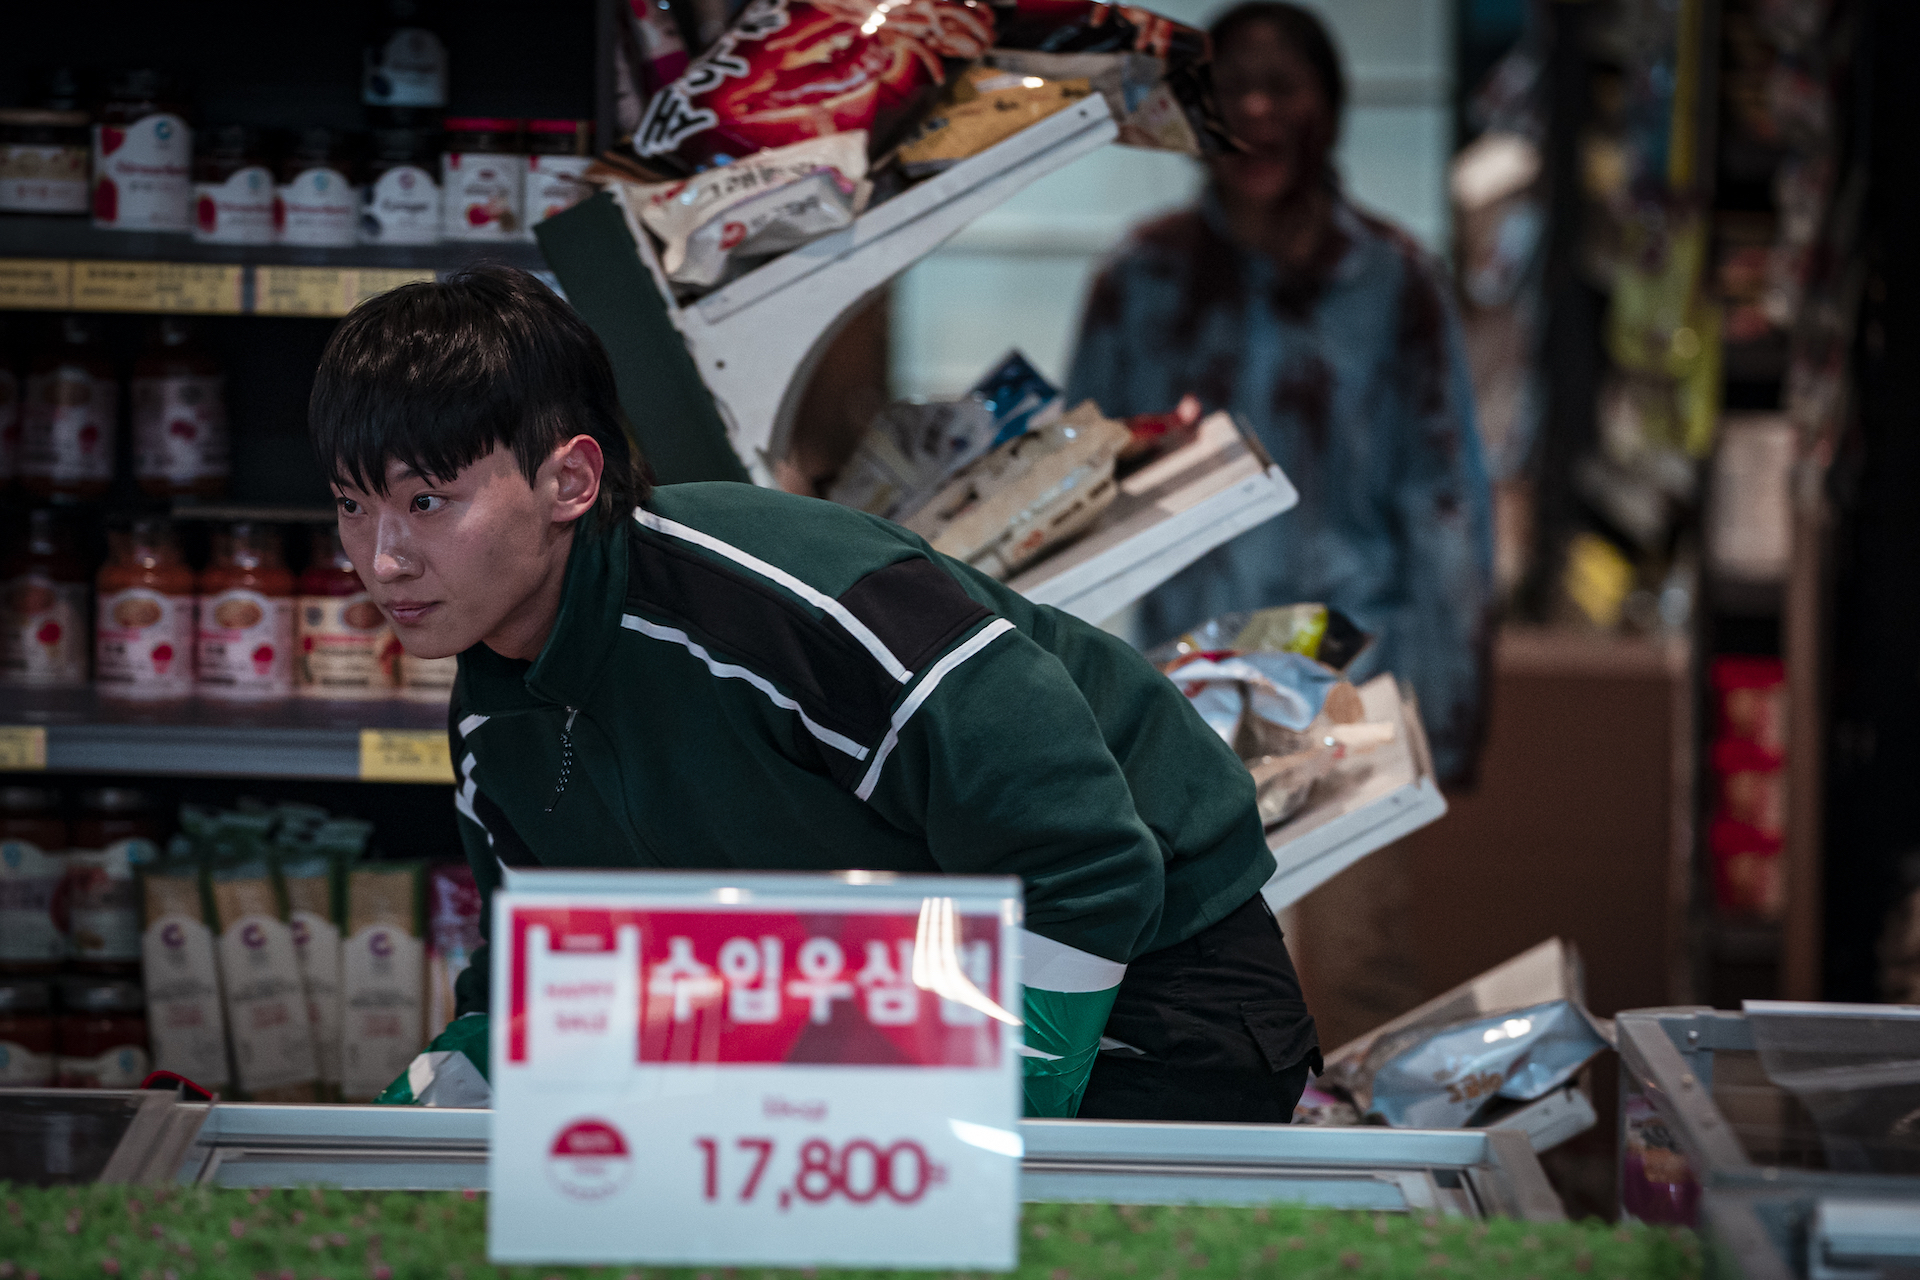 All of Us Are Dead: Netflix aposta em nova série coreana com